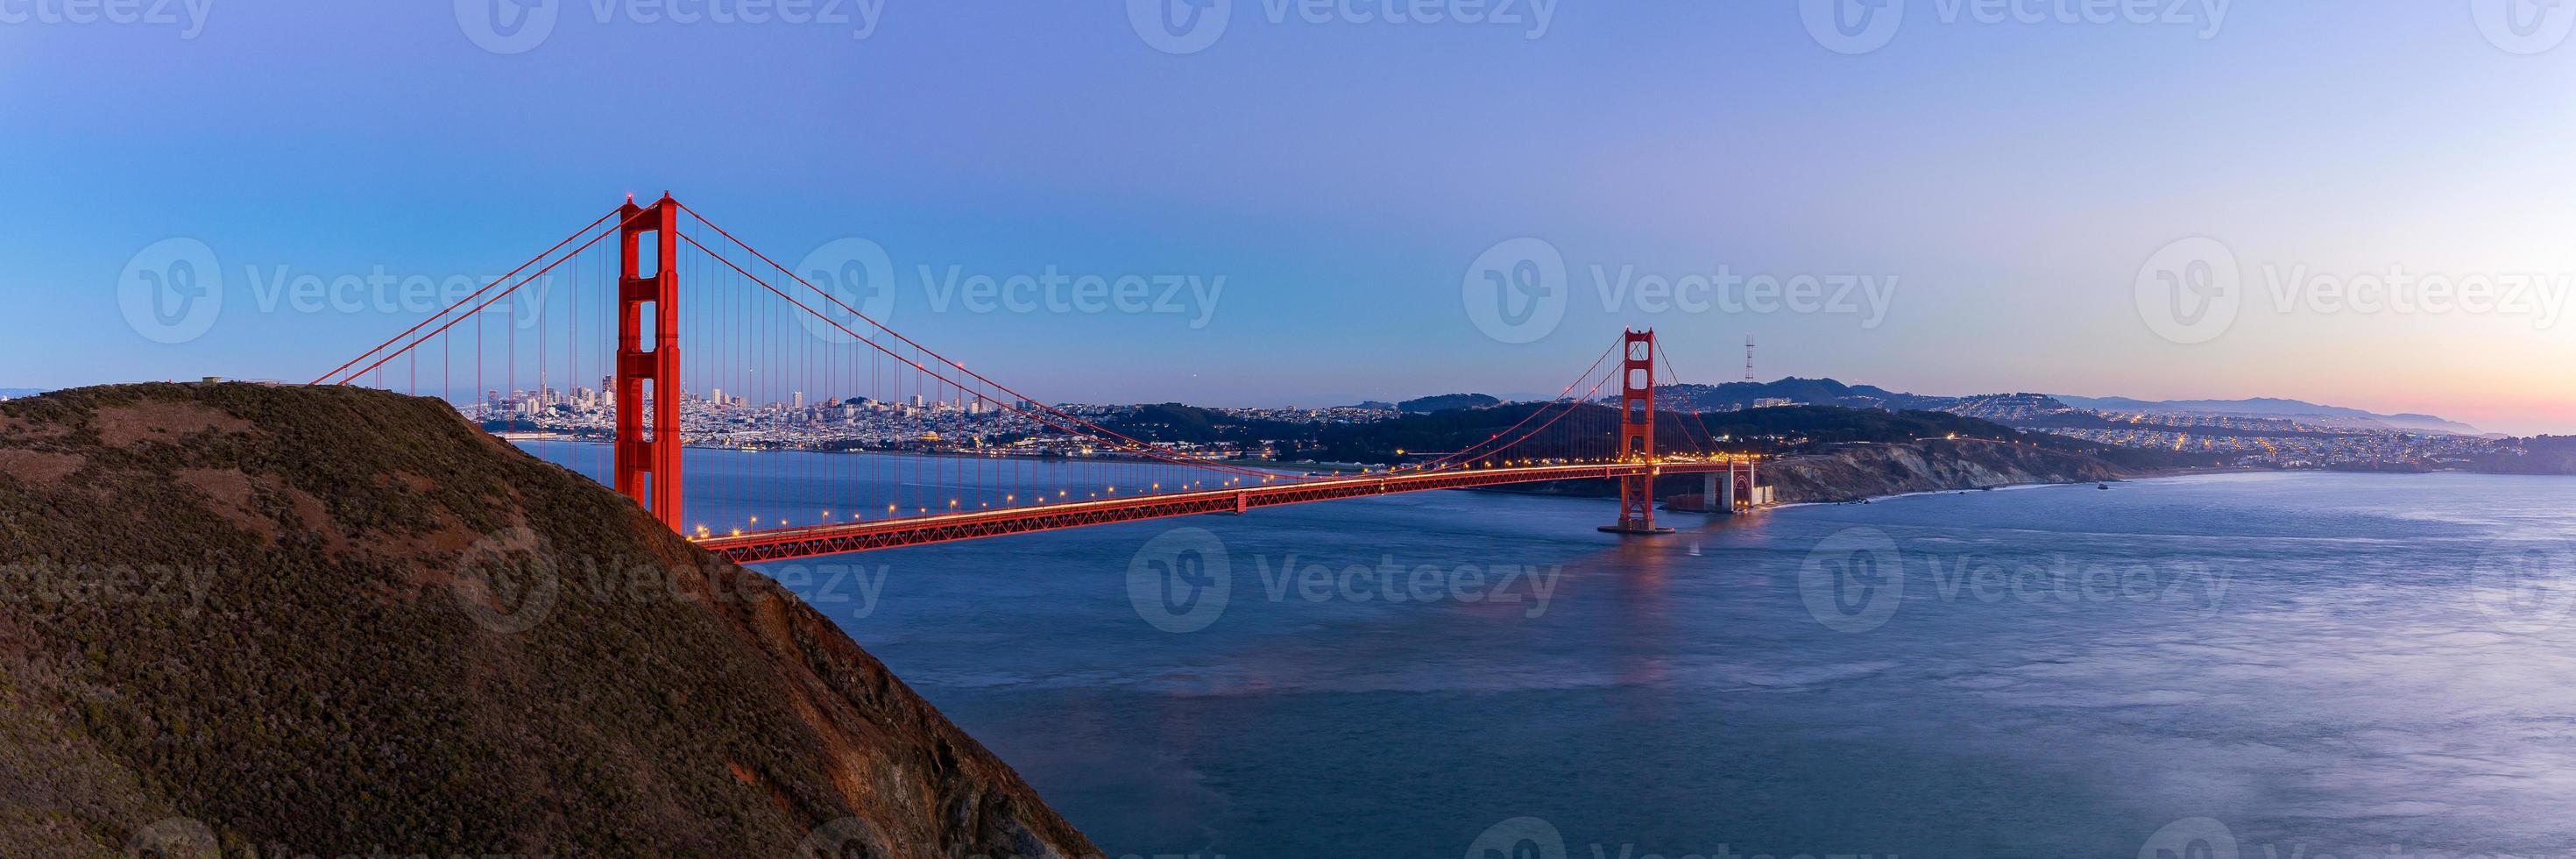 Vue panoramique du Golden Gate Bridge au crépuscule, San Francisco, USA. photo